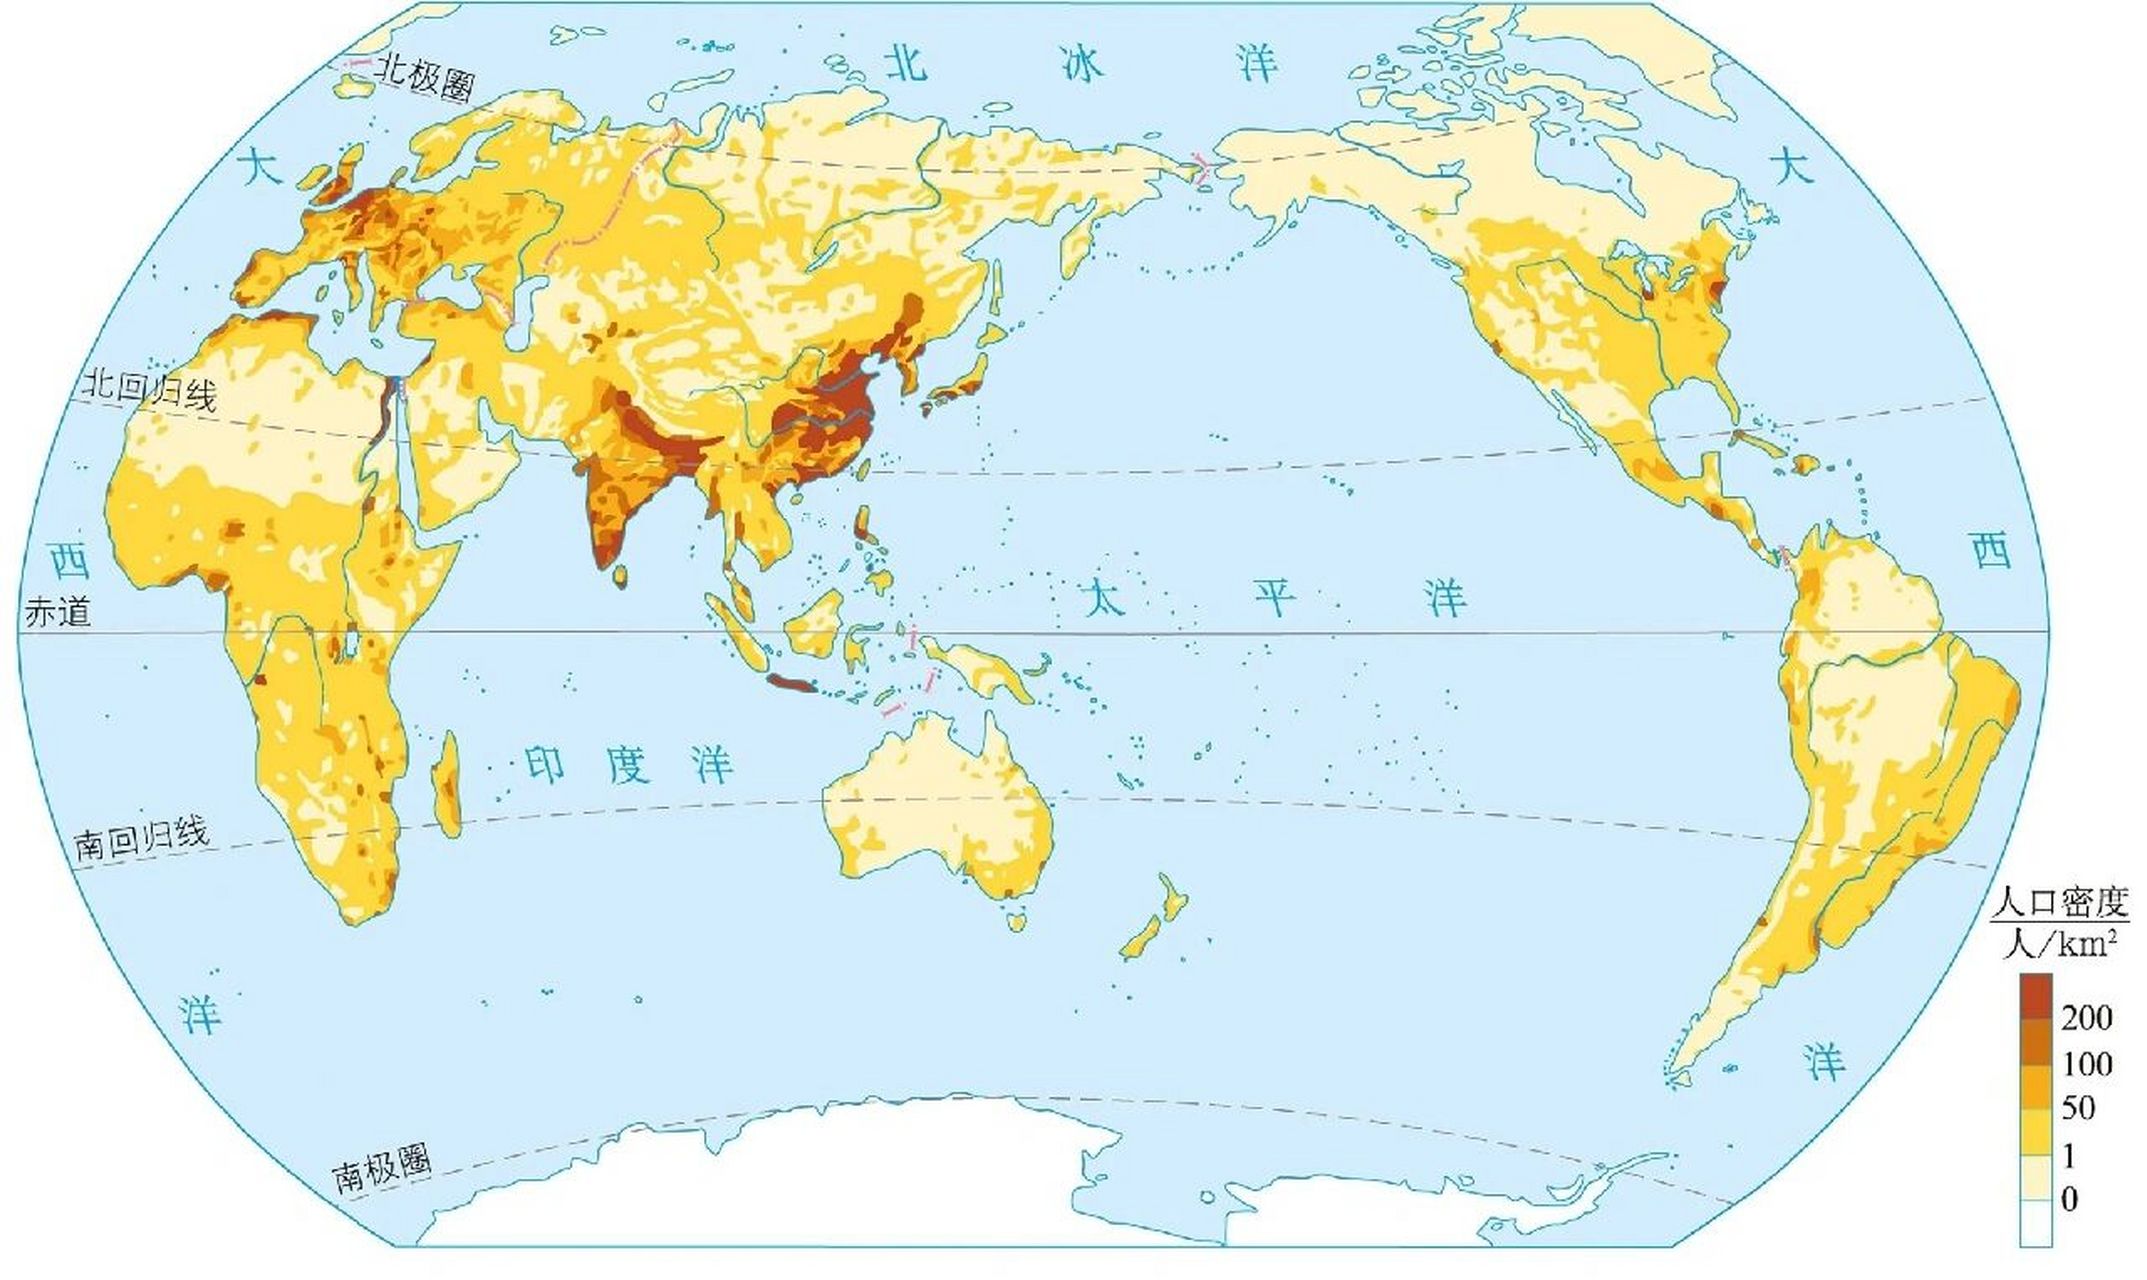 世界人口密度分布图片